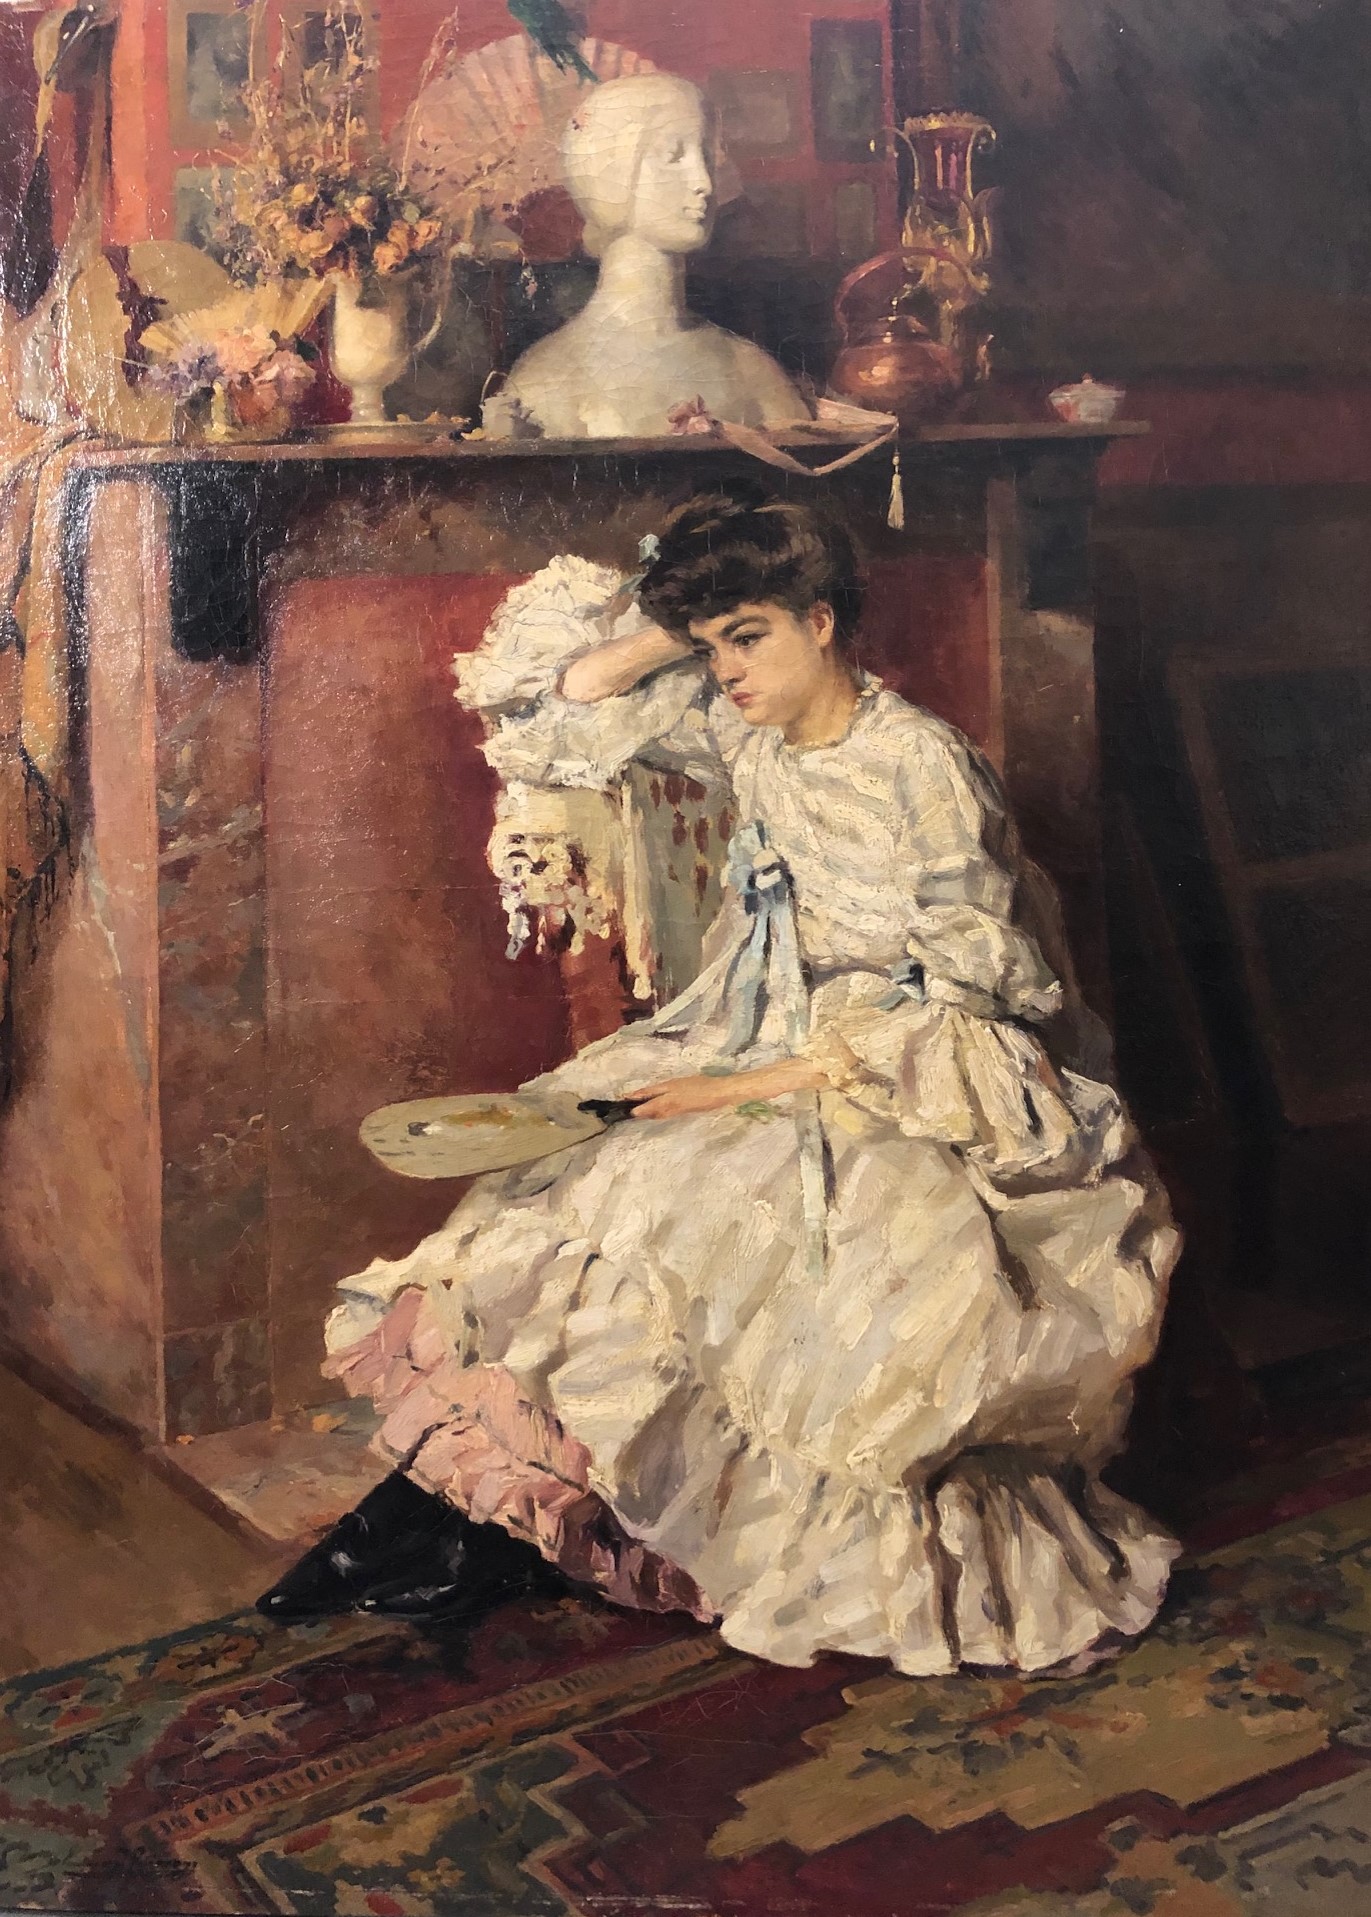 Godfrinon, pittura francese, belga, Ottocento, interno con figura